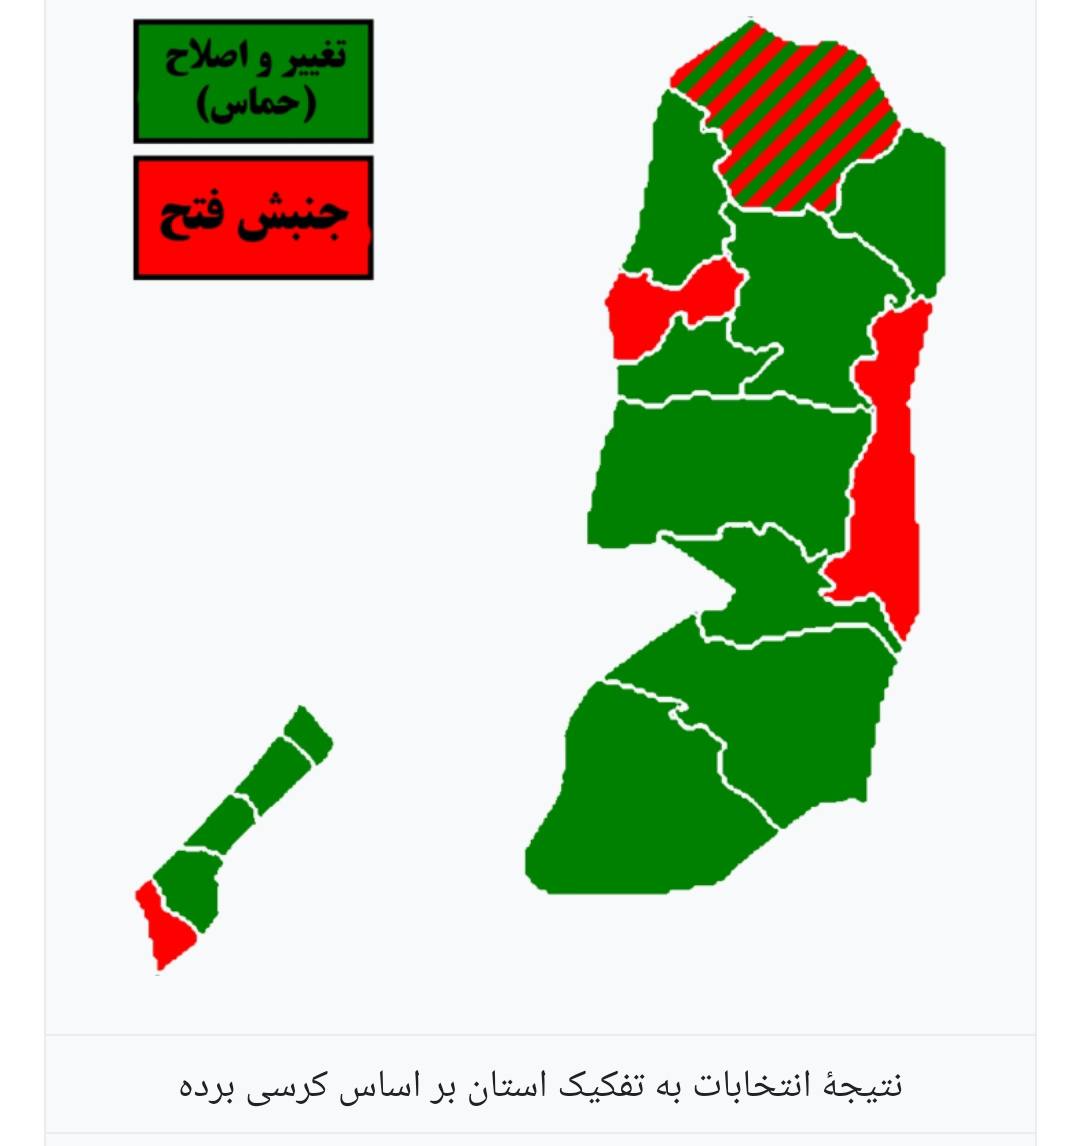 آمار متفاوتی از پایگاه اجتماعی حماس در بین فلسطینیان